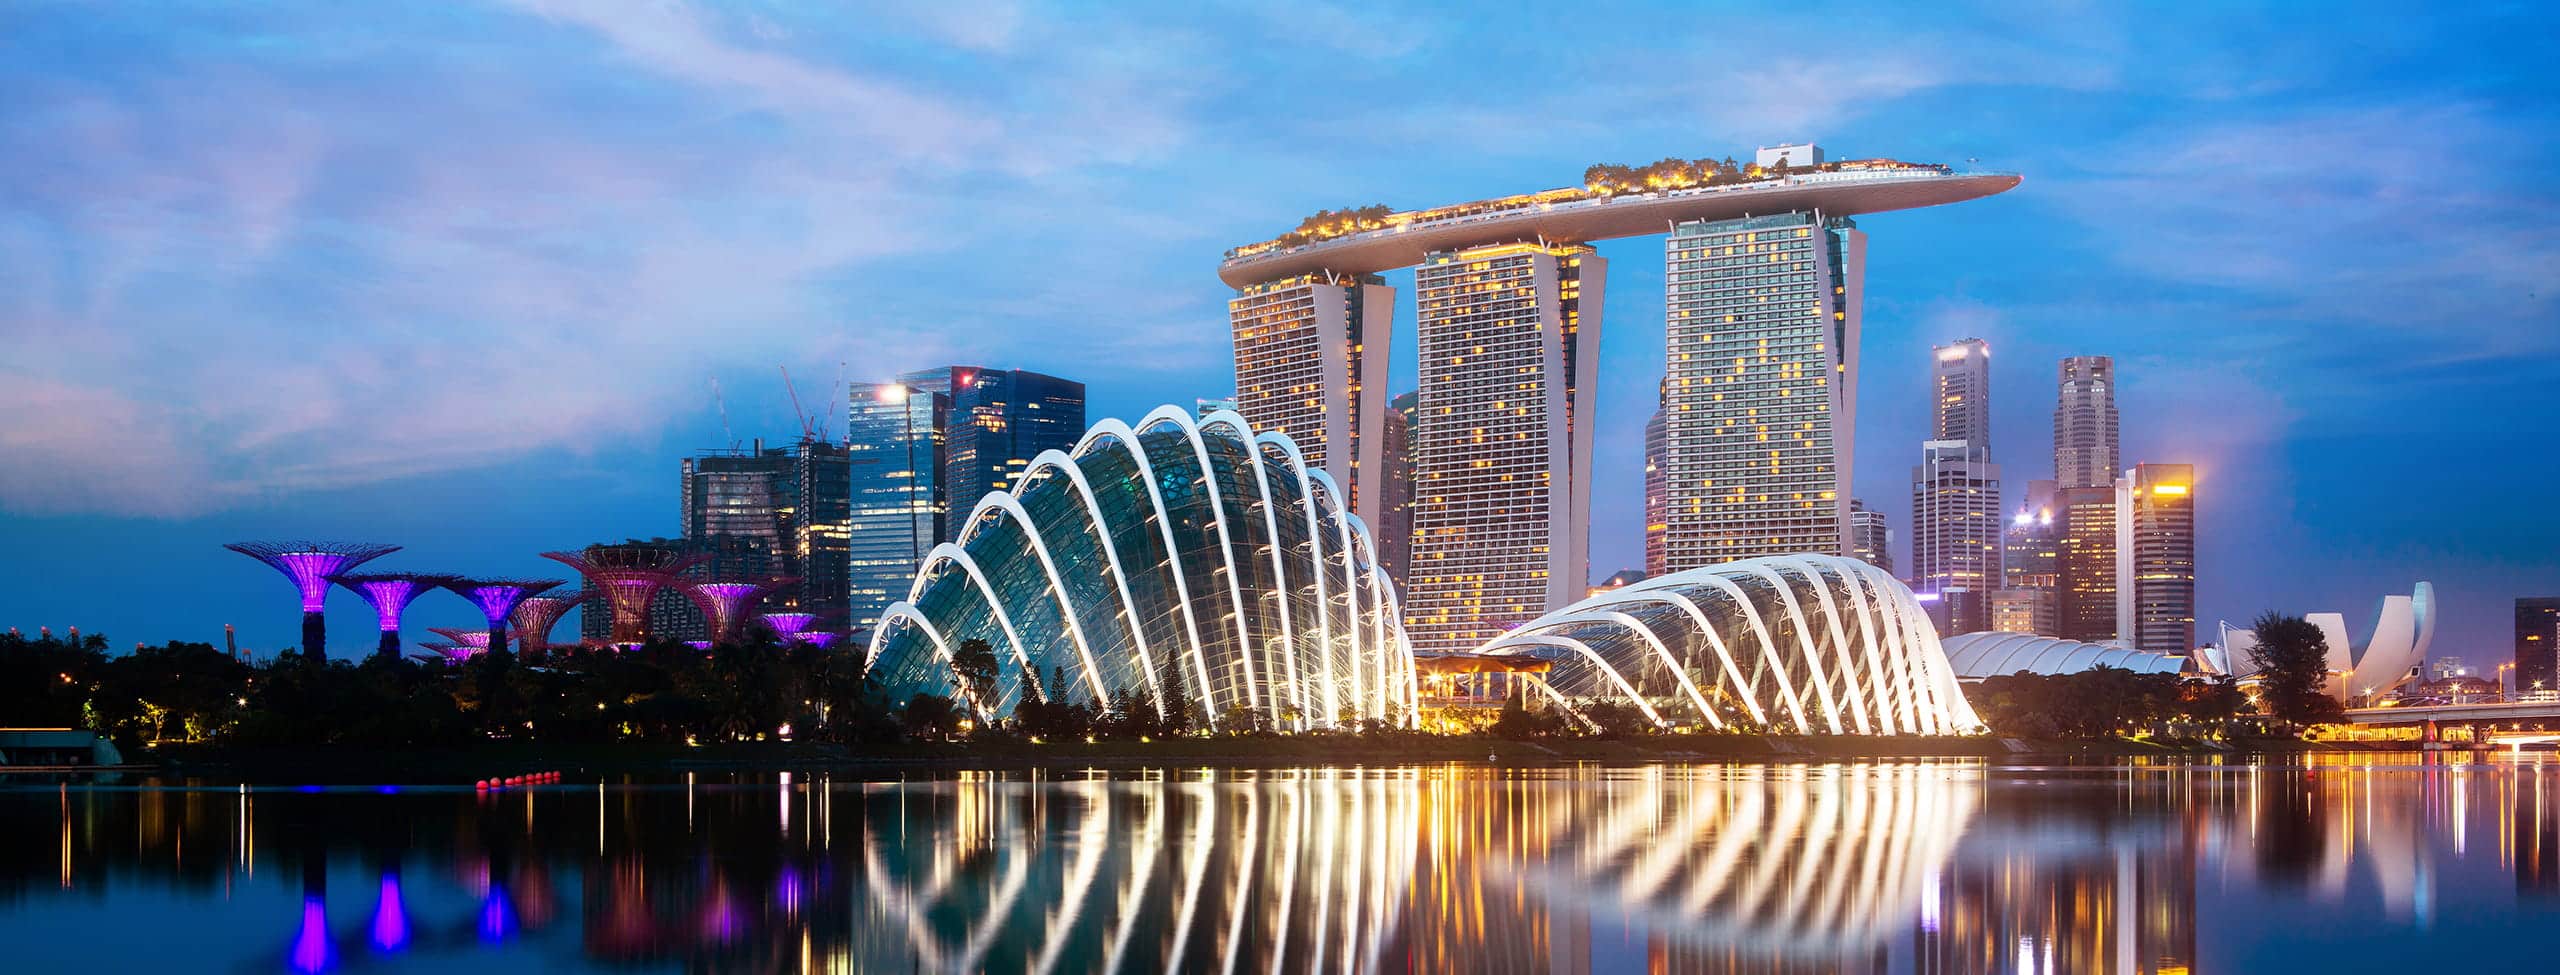 Singapore_River_City_L_0340